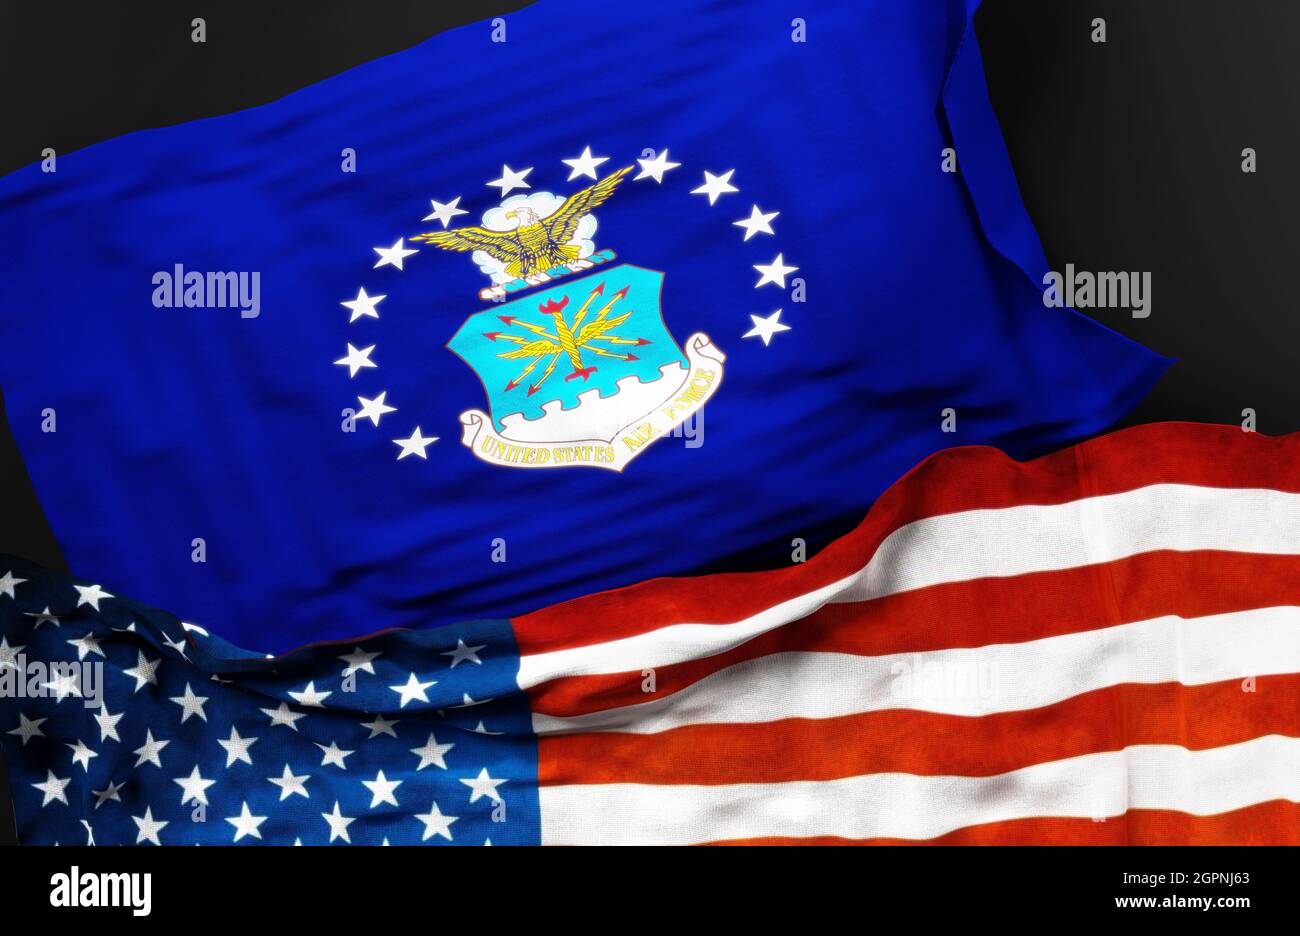 Bandera de la Fuerza Aérea de los Estados Unidos junto con una bandera de los Estados Unidos de América como símbolo de una conexión entre ellos, ilustración 3D Foto de stock